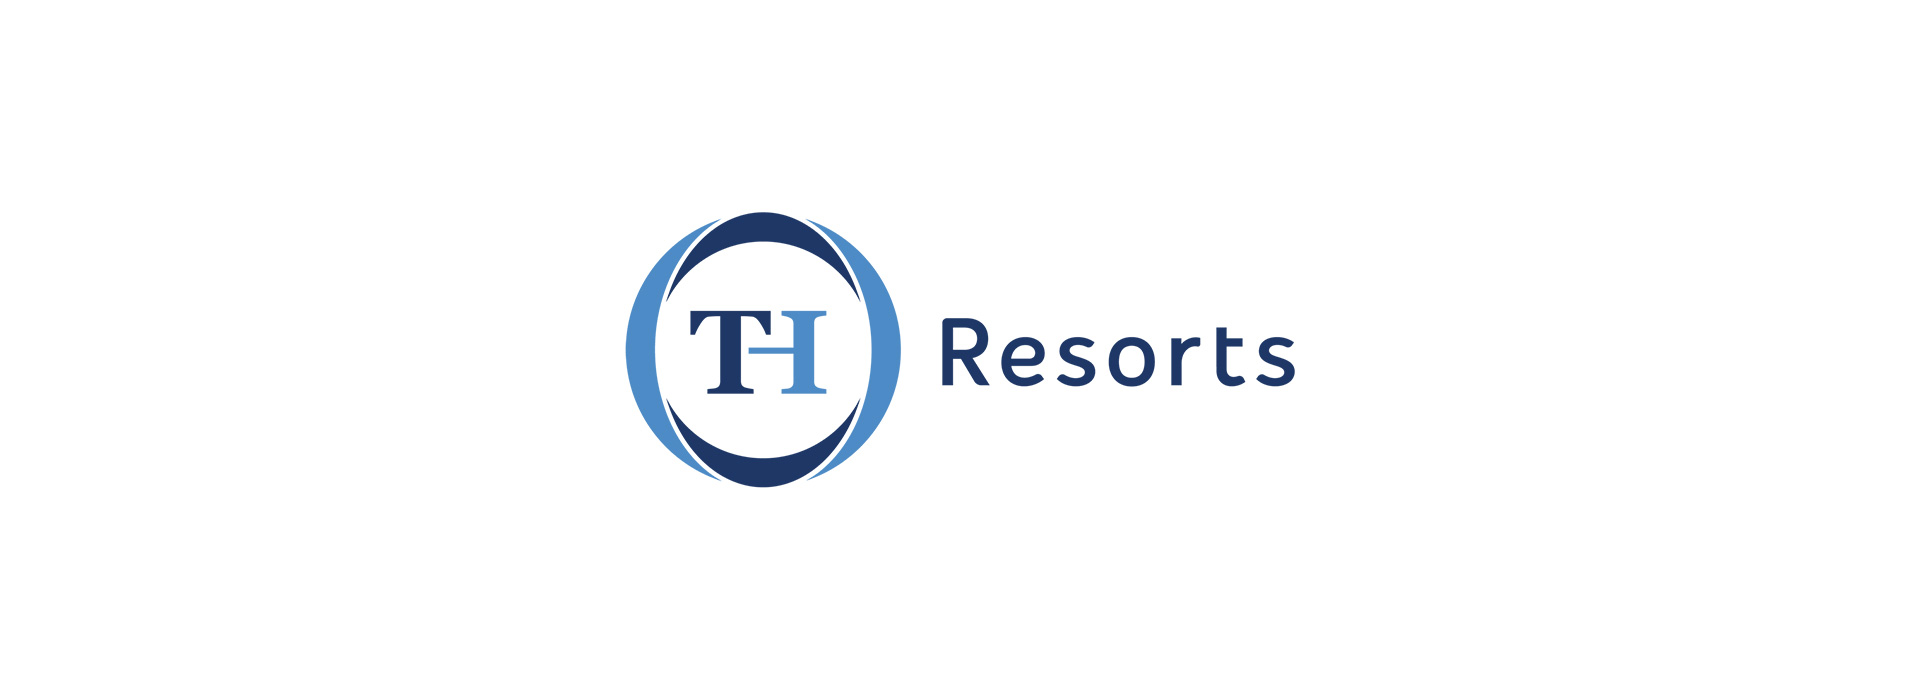 Promozione TH Resorts: Extra sconto 100 €